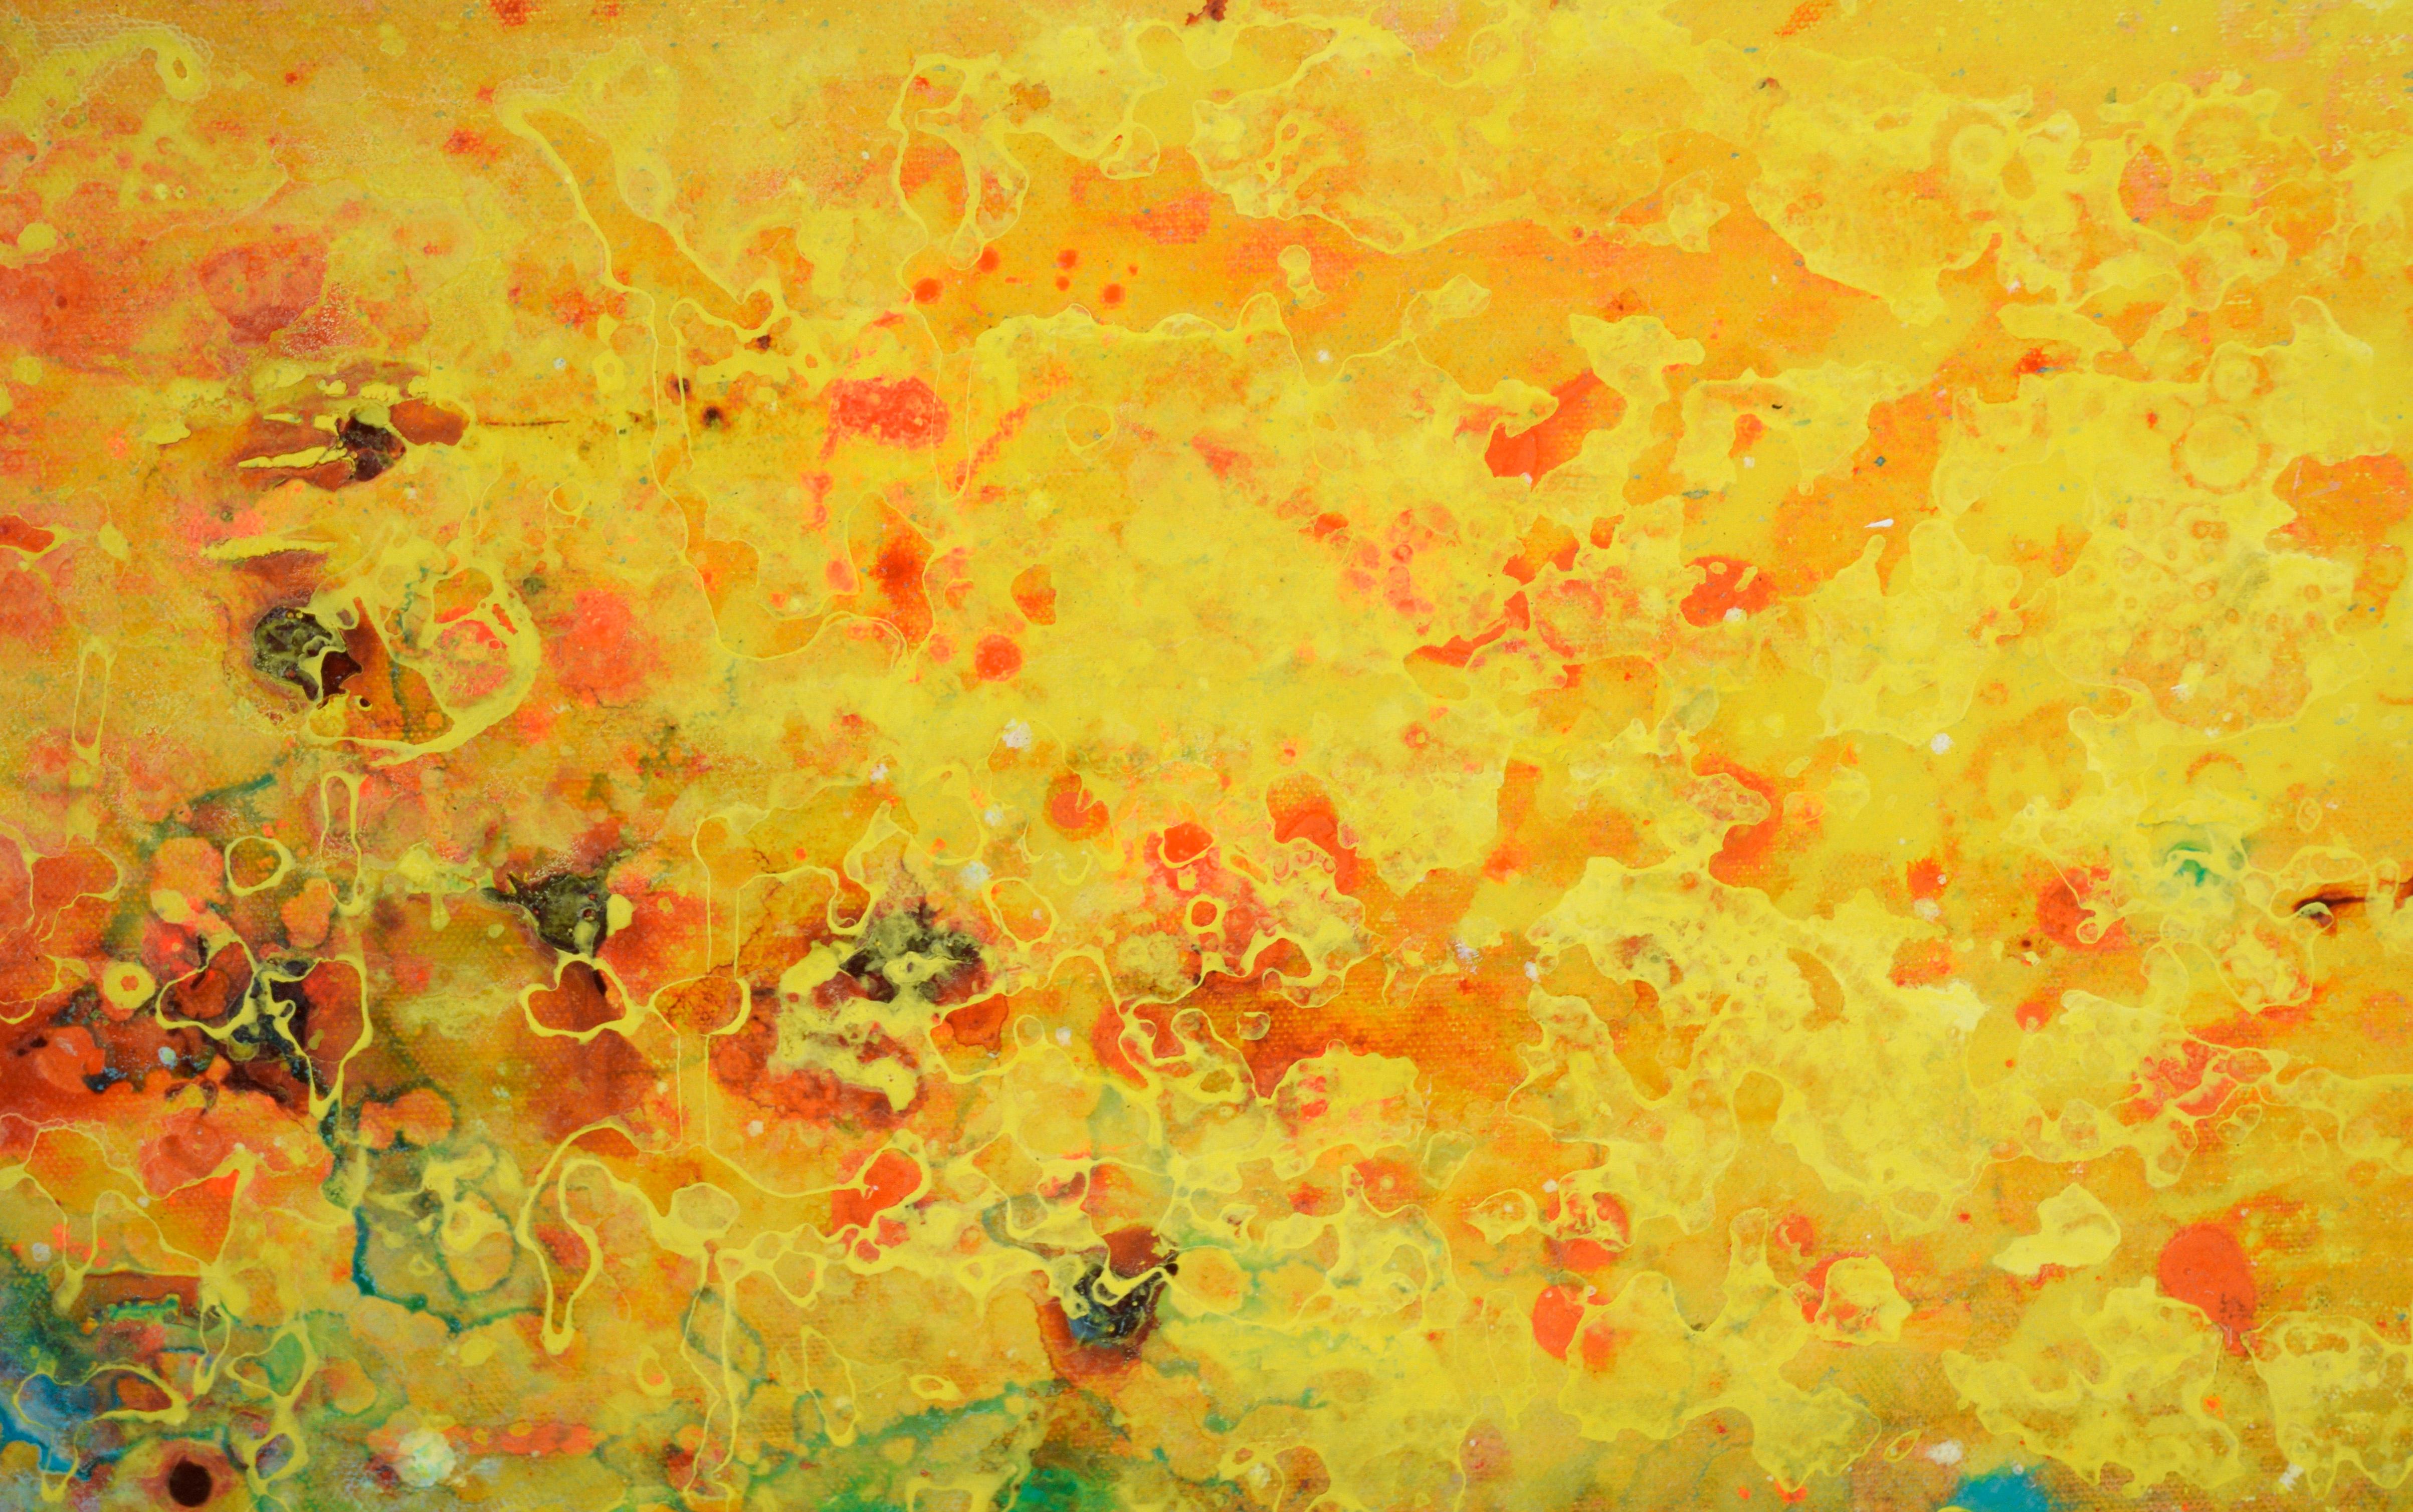 Feuer und Wasser – Abstrakte expressionistische Komposition aus Acryl auf Leinwand (Abstrakter Expressionismus), Painting, von Charles David Francis